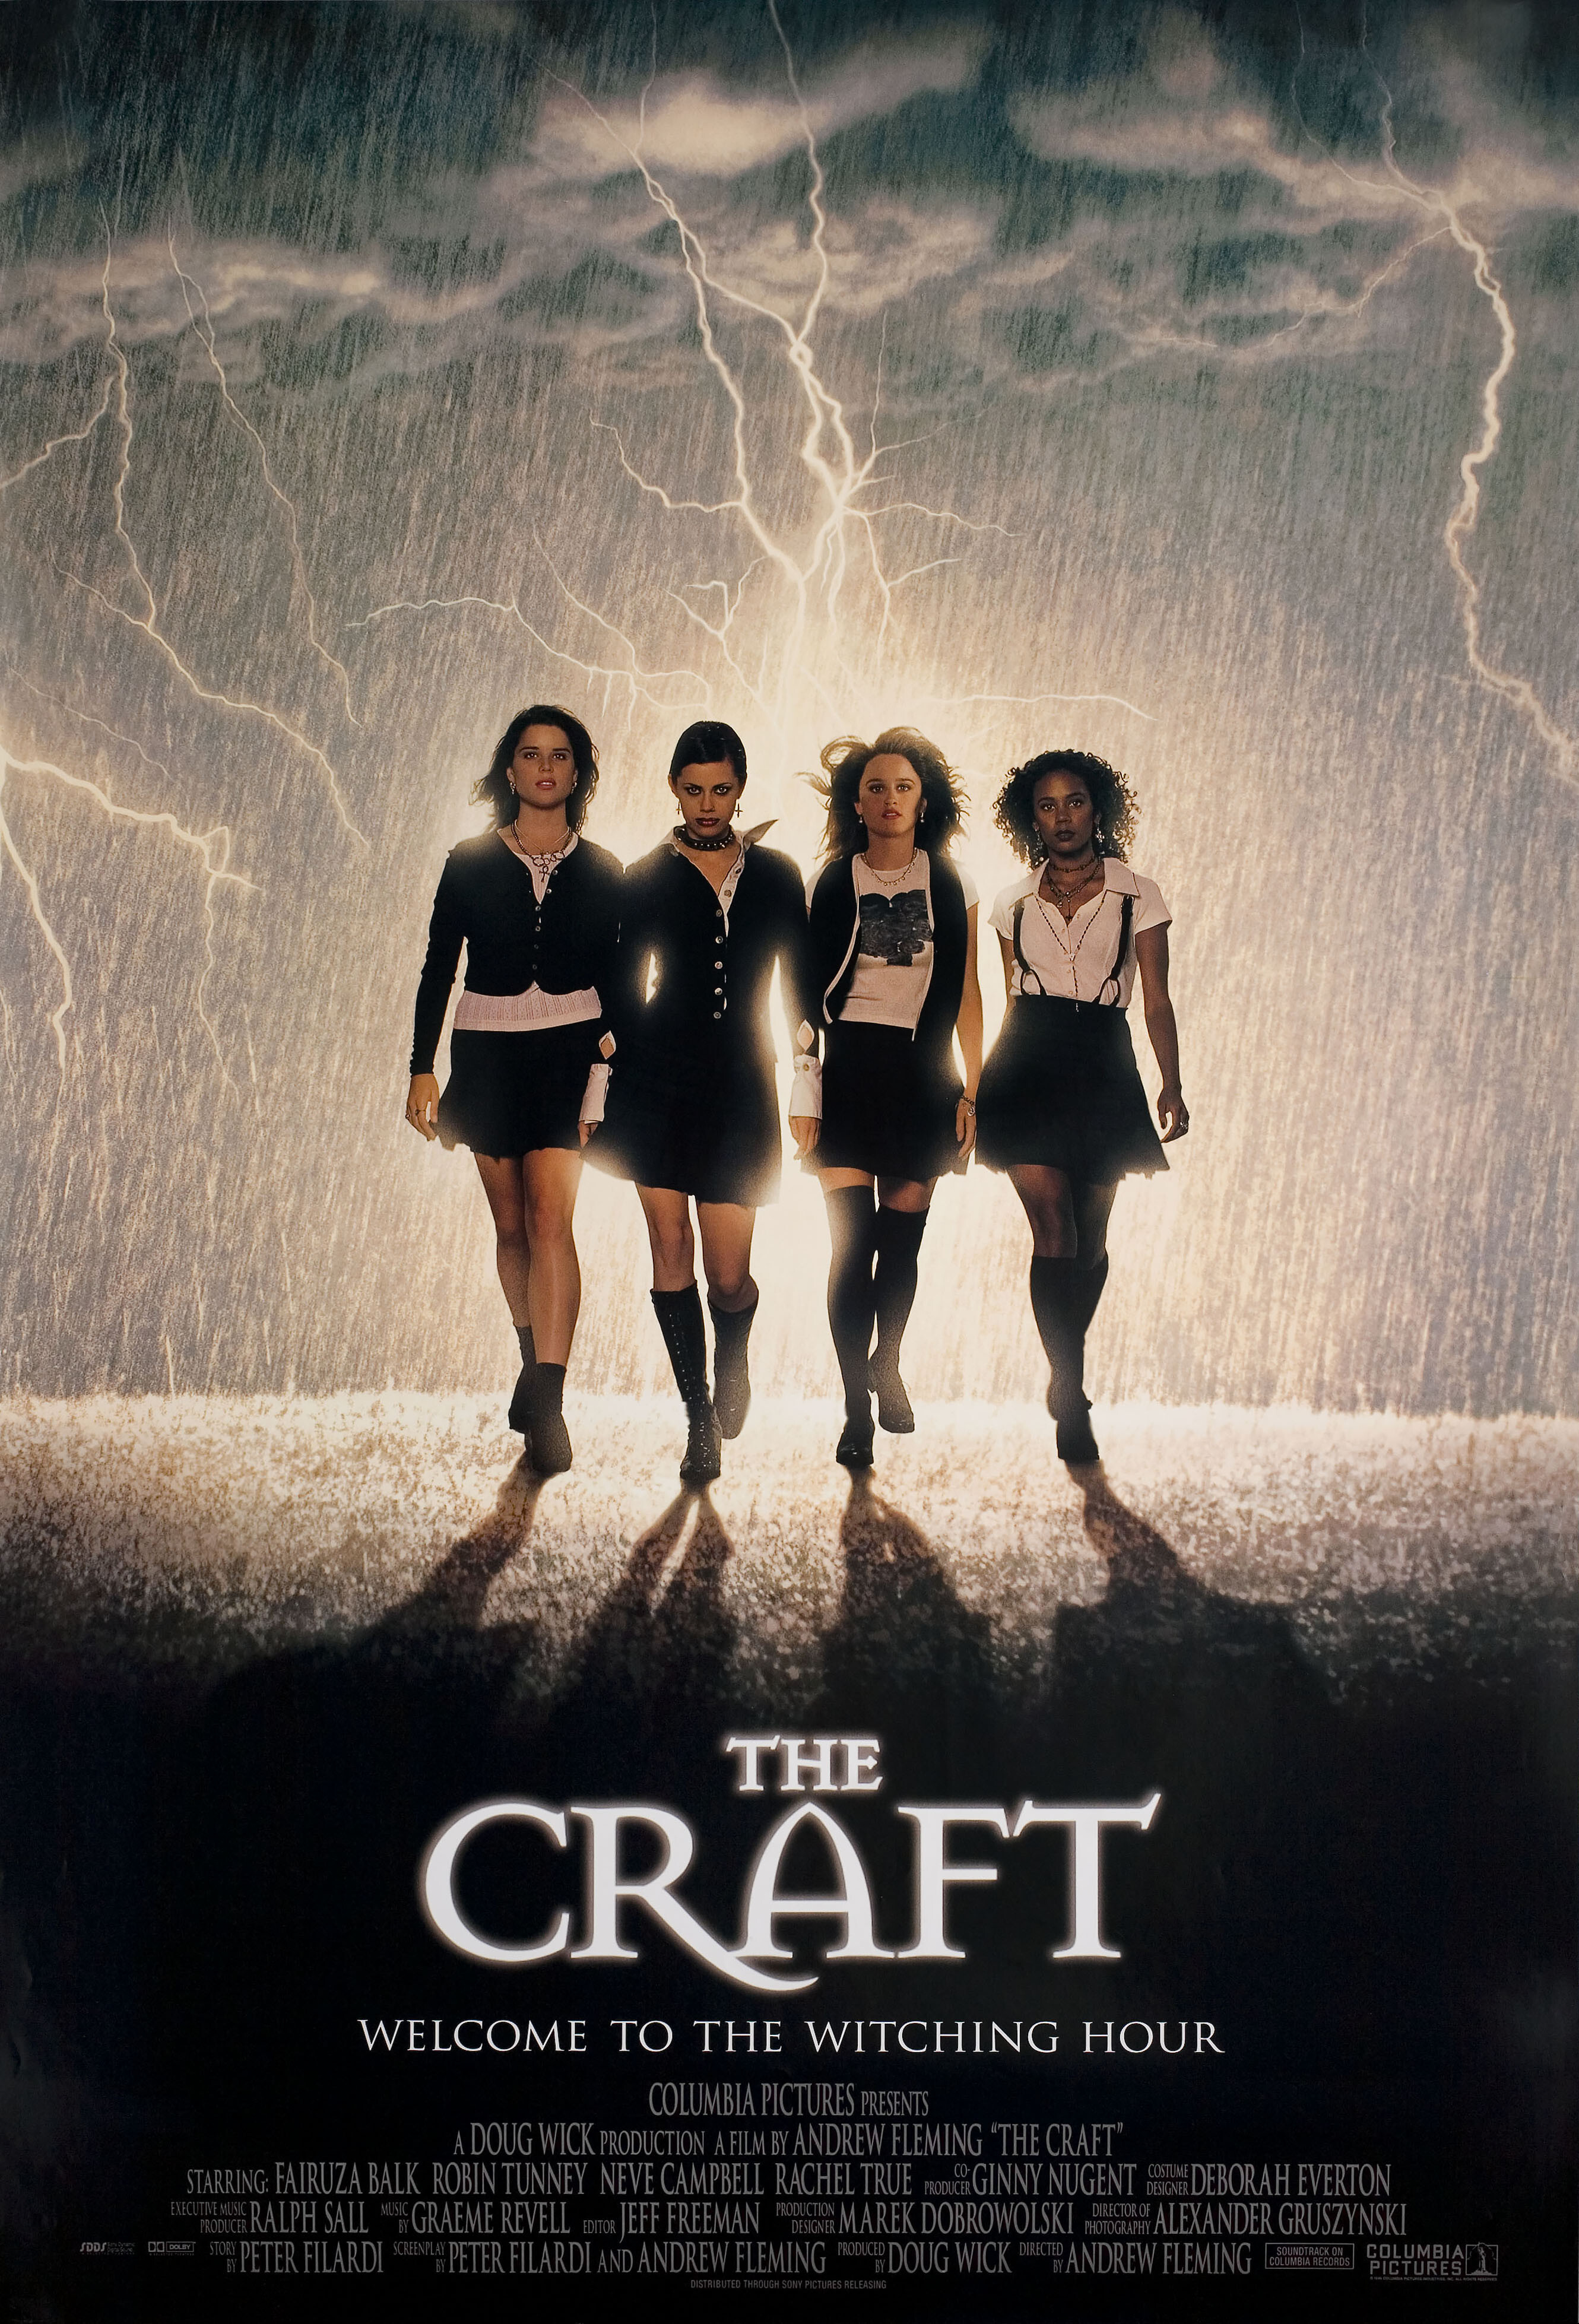 Колдовство (The Craft, 1996), режиссёр Эндрю Флеминг, американский постер к фильму (ужасы, 1996 год)